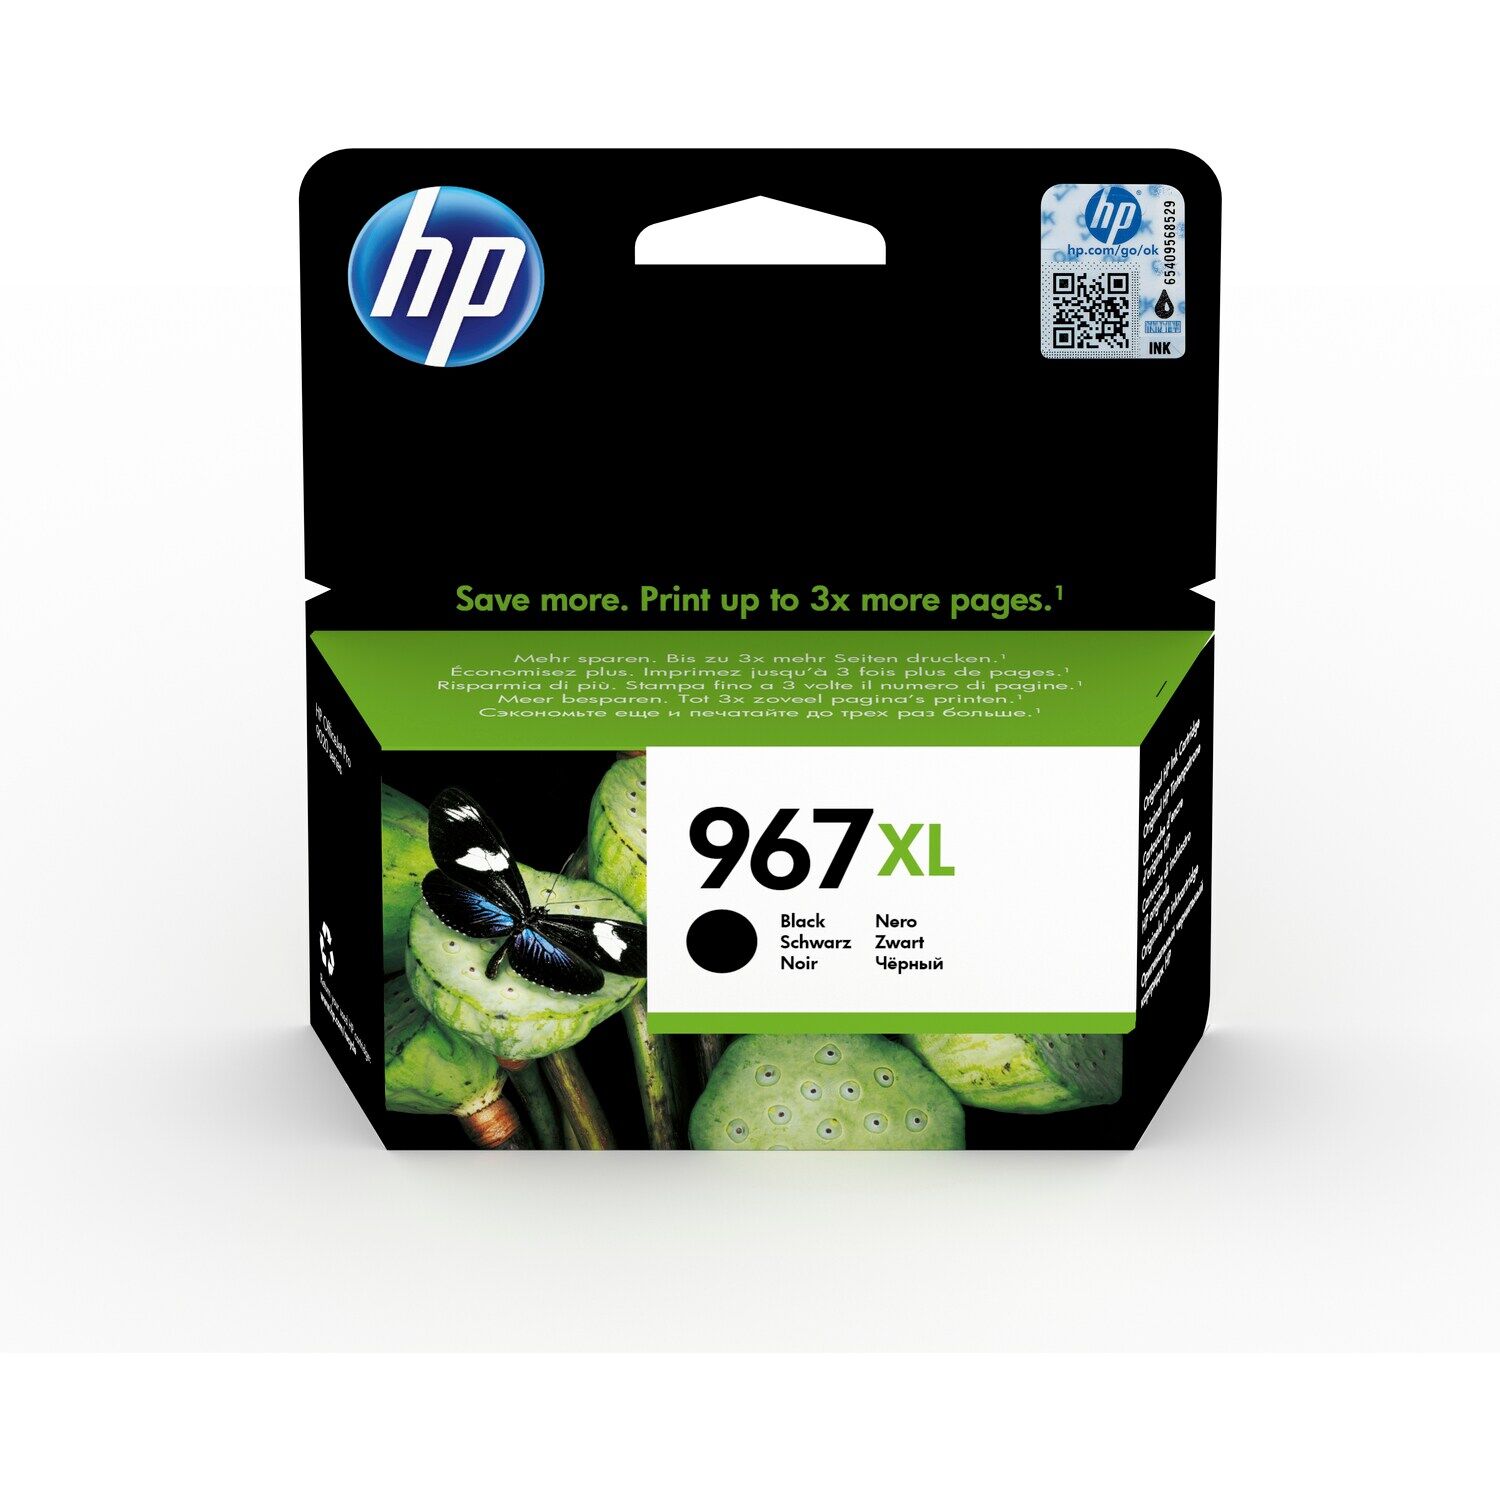 Картридж для печати HP Картридж HP 967XL 3JA31AE вид печати струйный, цвет Черный, емкость 69мл.